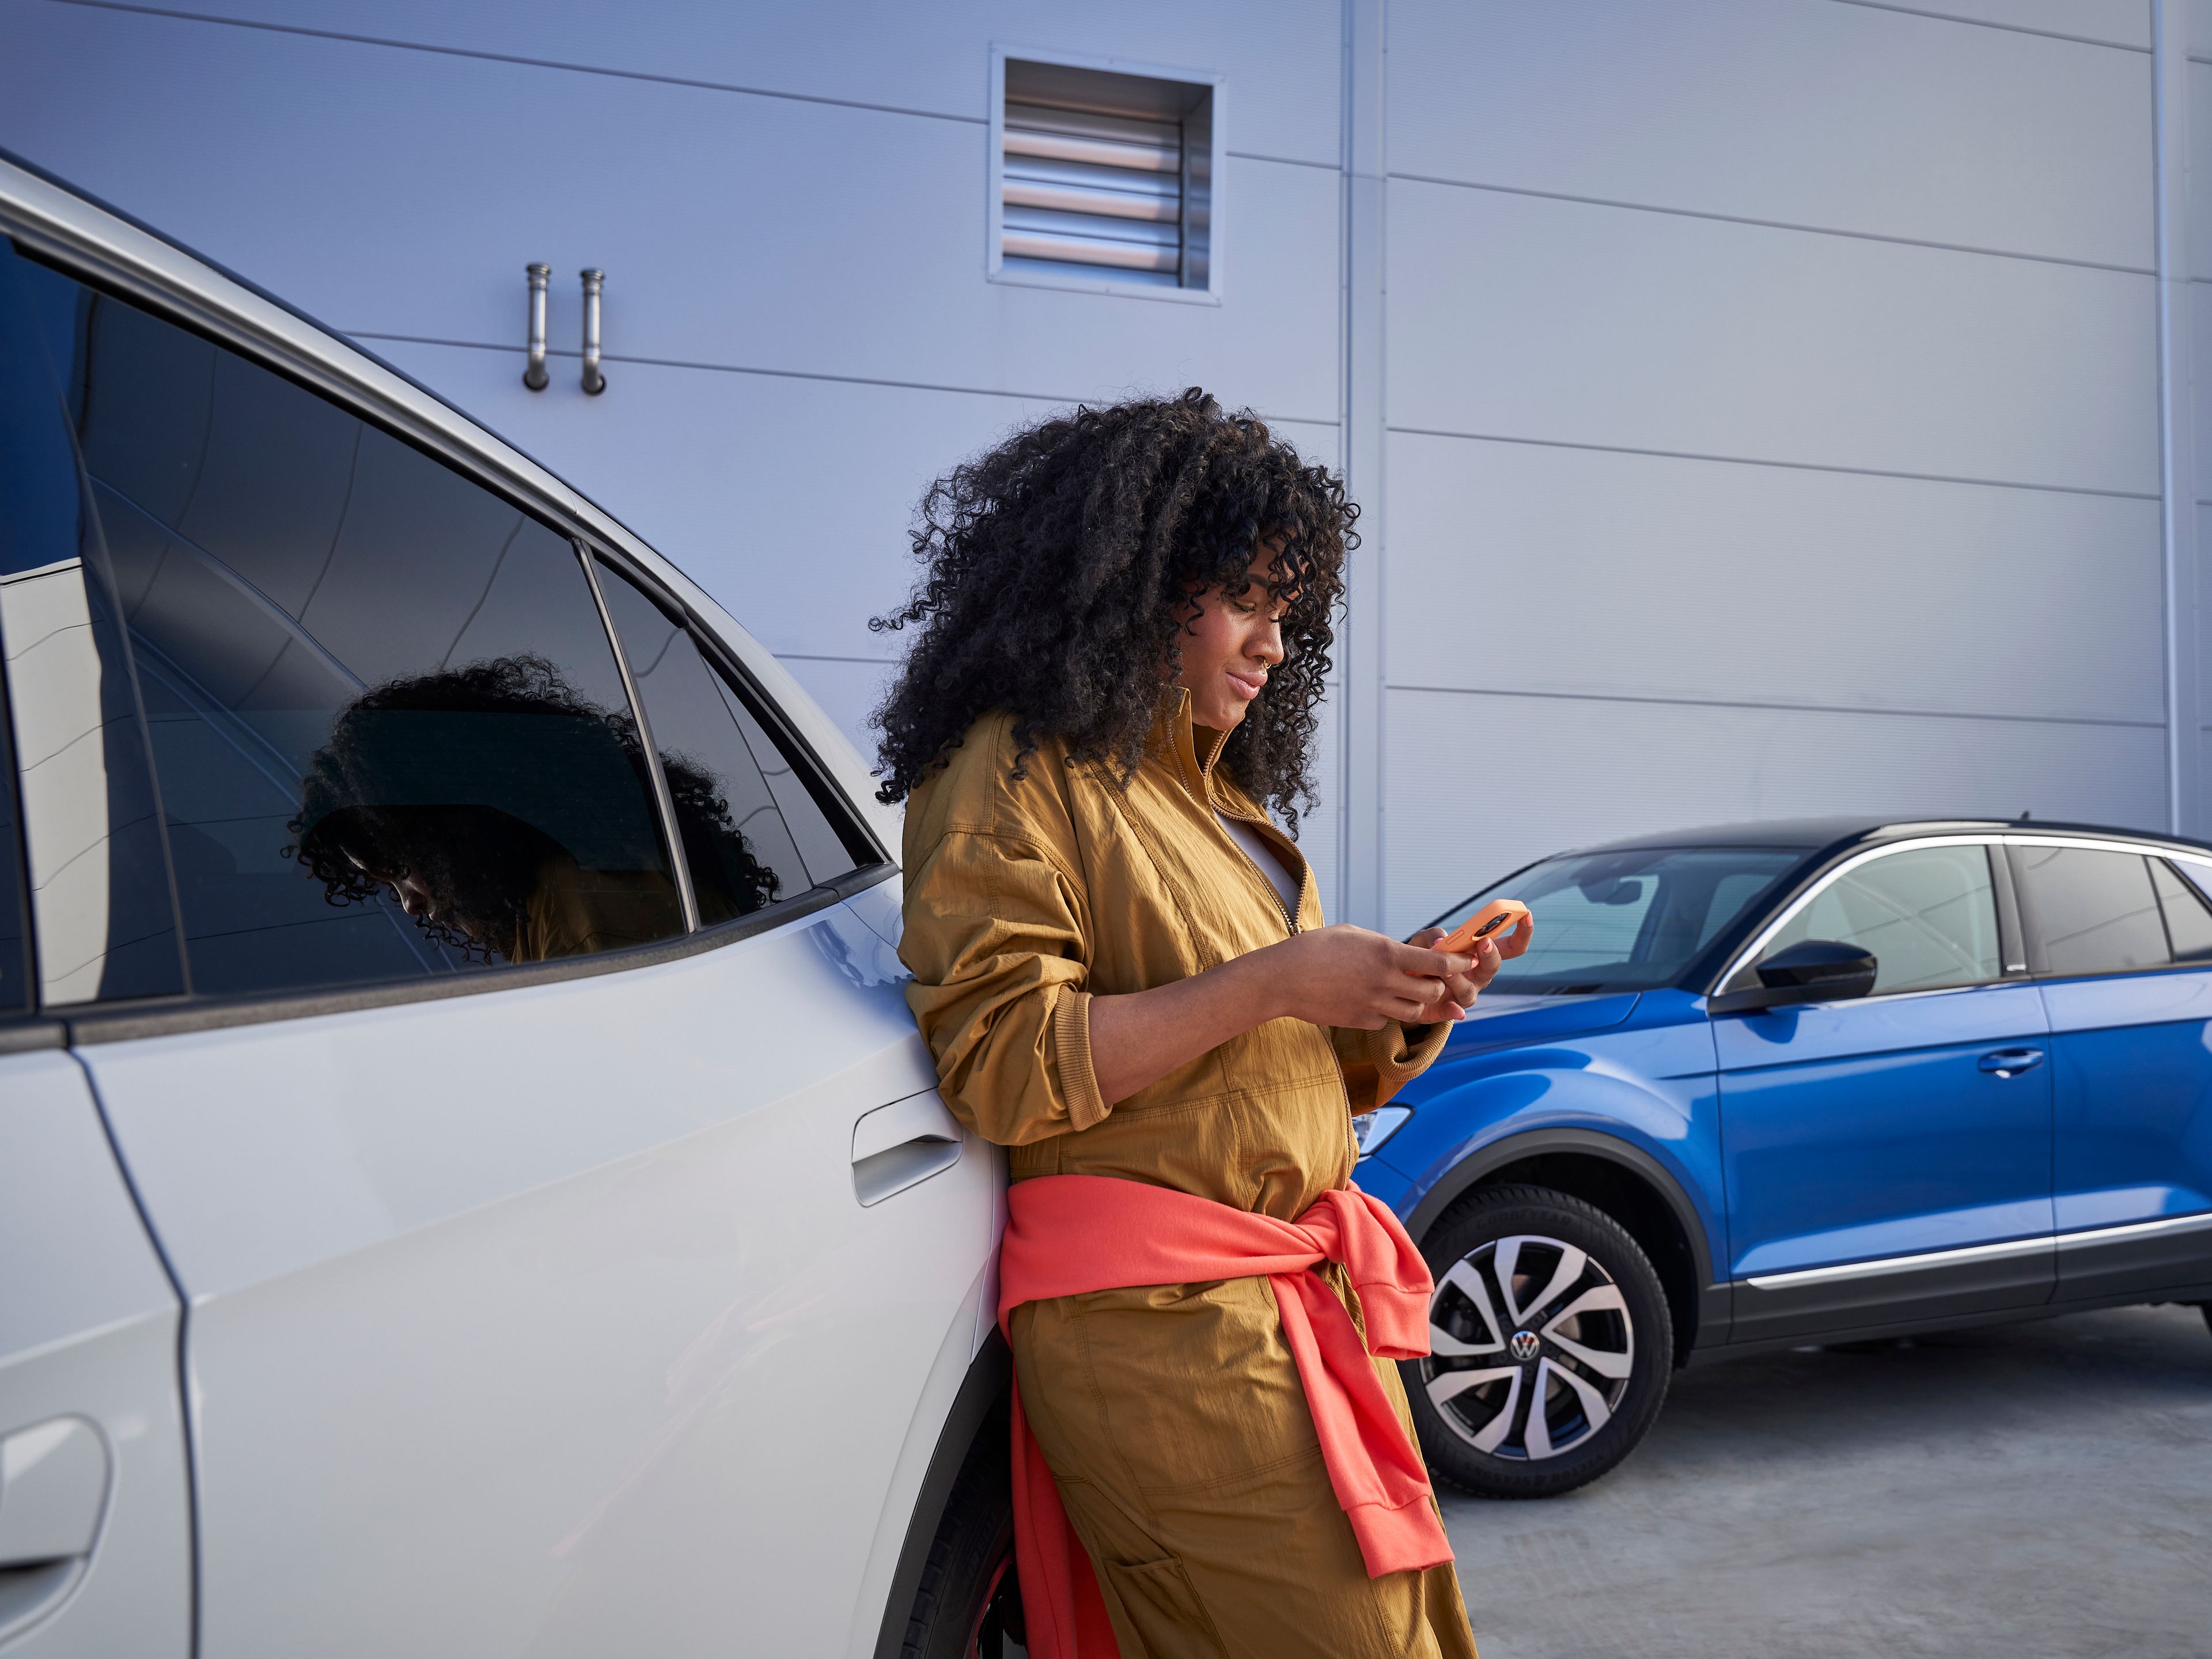 Frau lehnt an Volkswagen und blickt auf ihr Smartphone, im Hintergrund sieht man einen blauen T-Roc